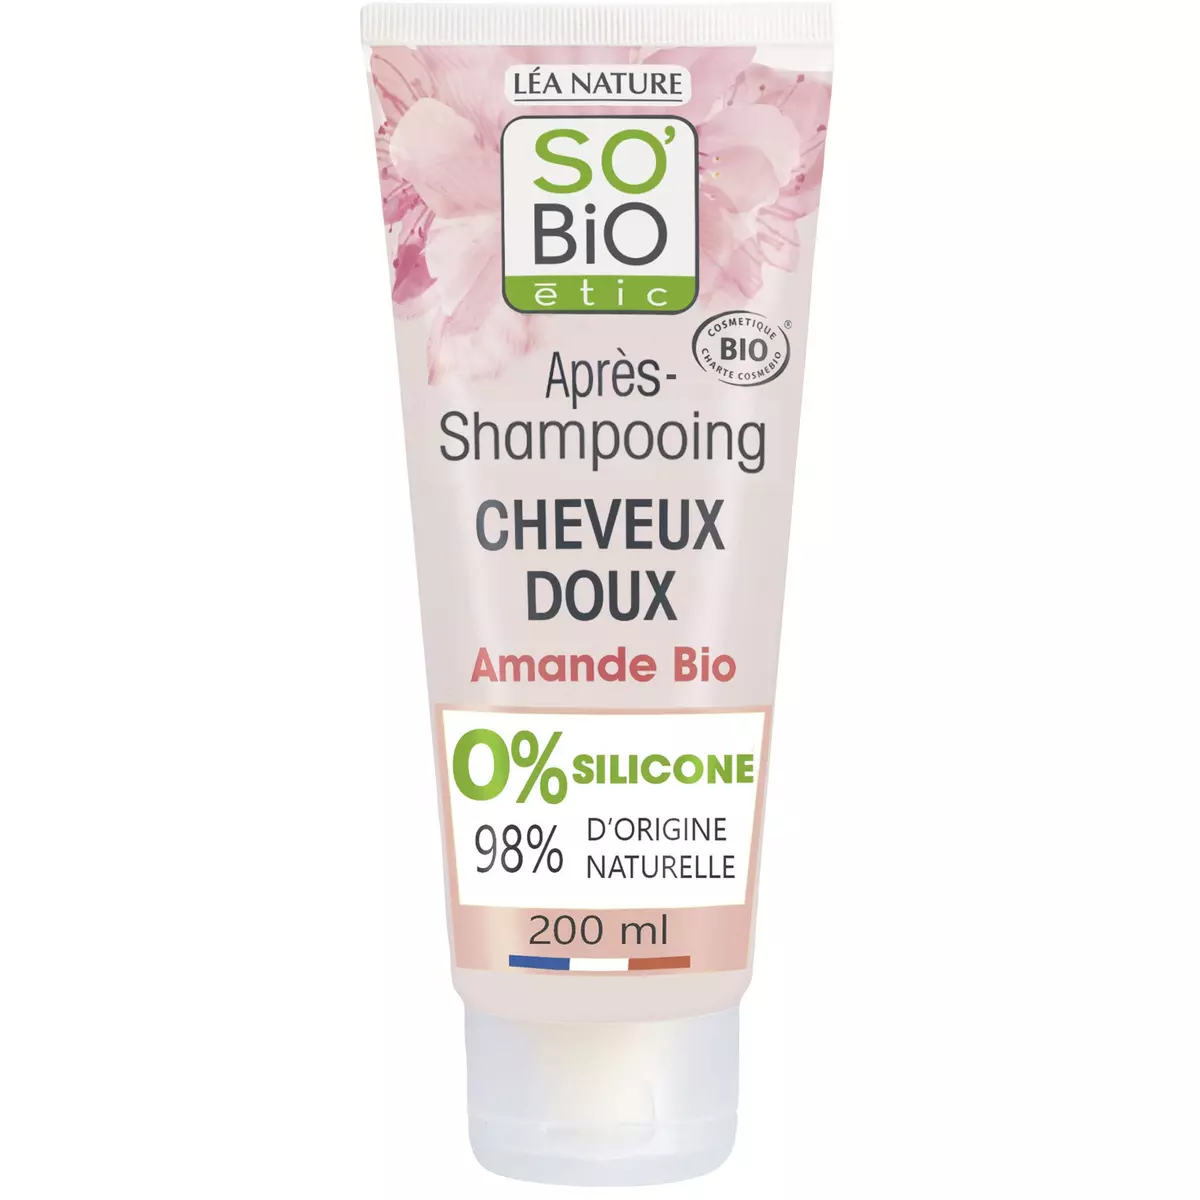 SO BIO ETIC Après-shampooing doux bio lait d'amande tous types de cheveux 200ml